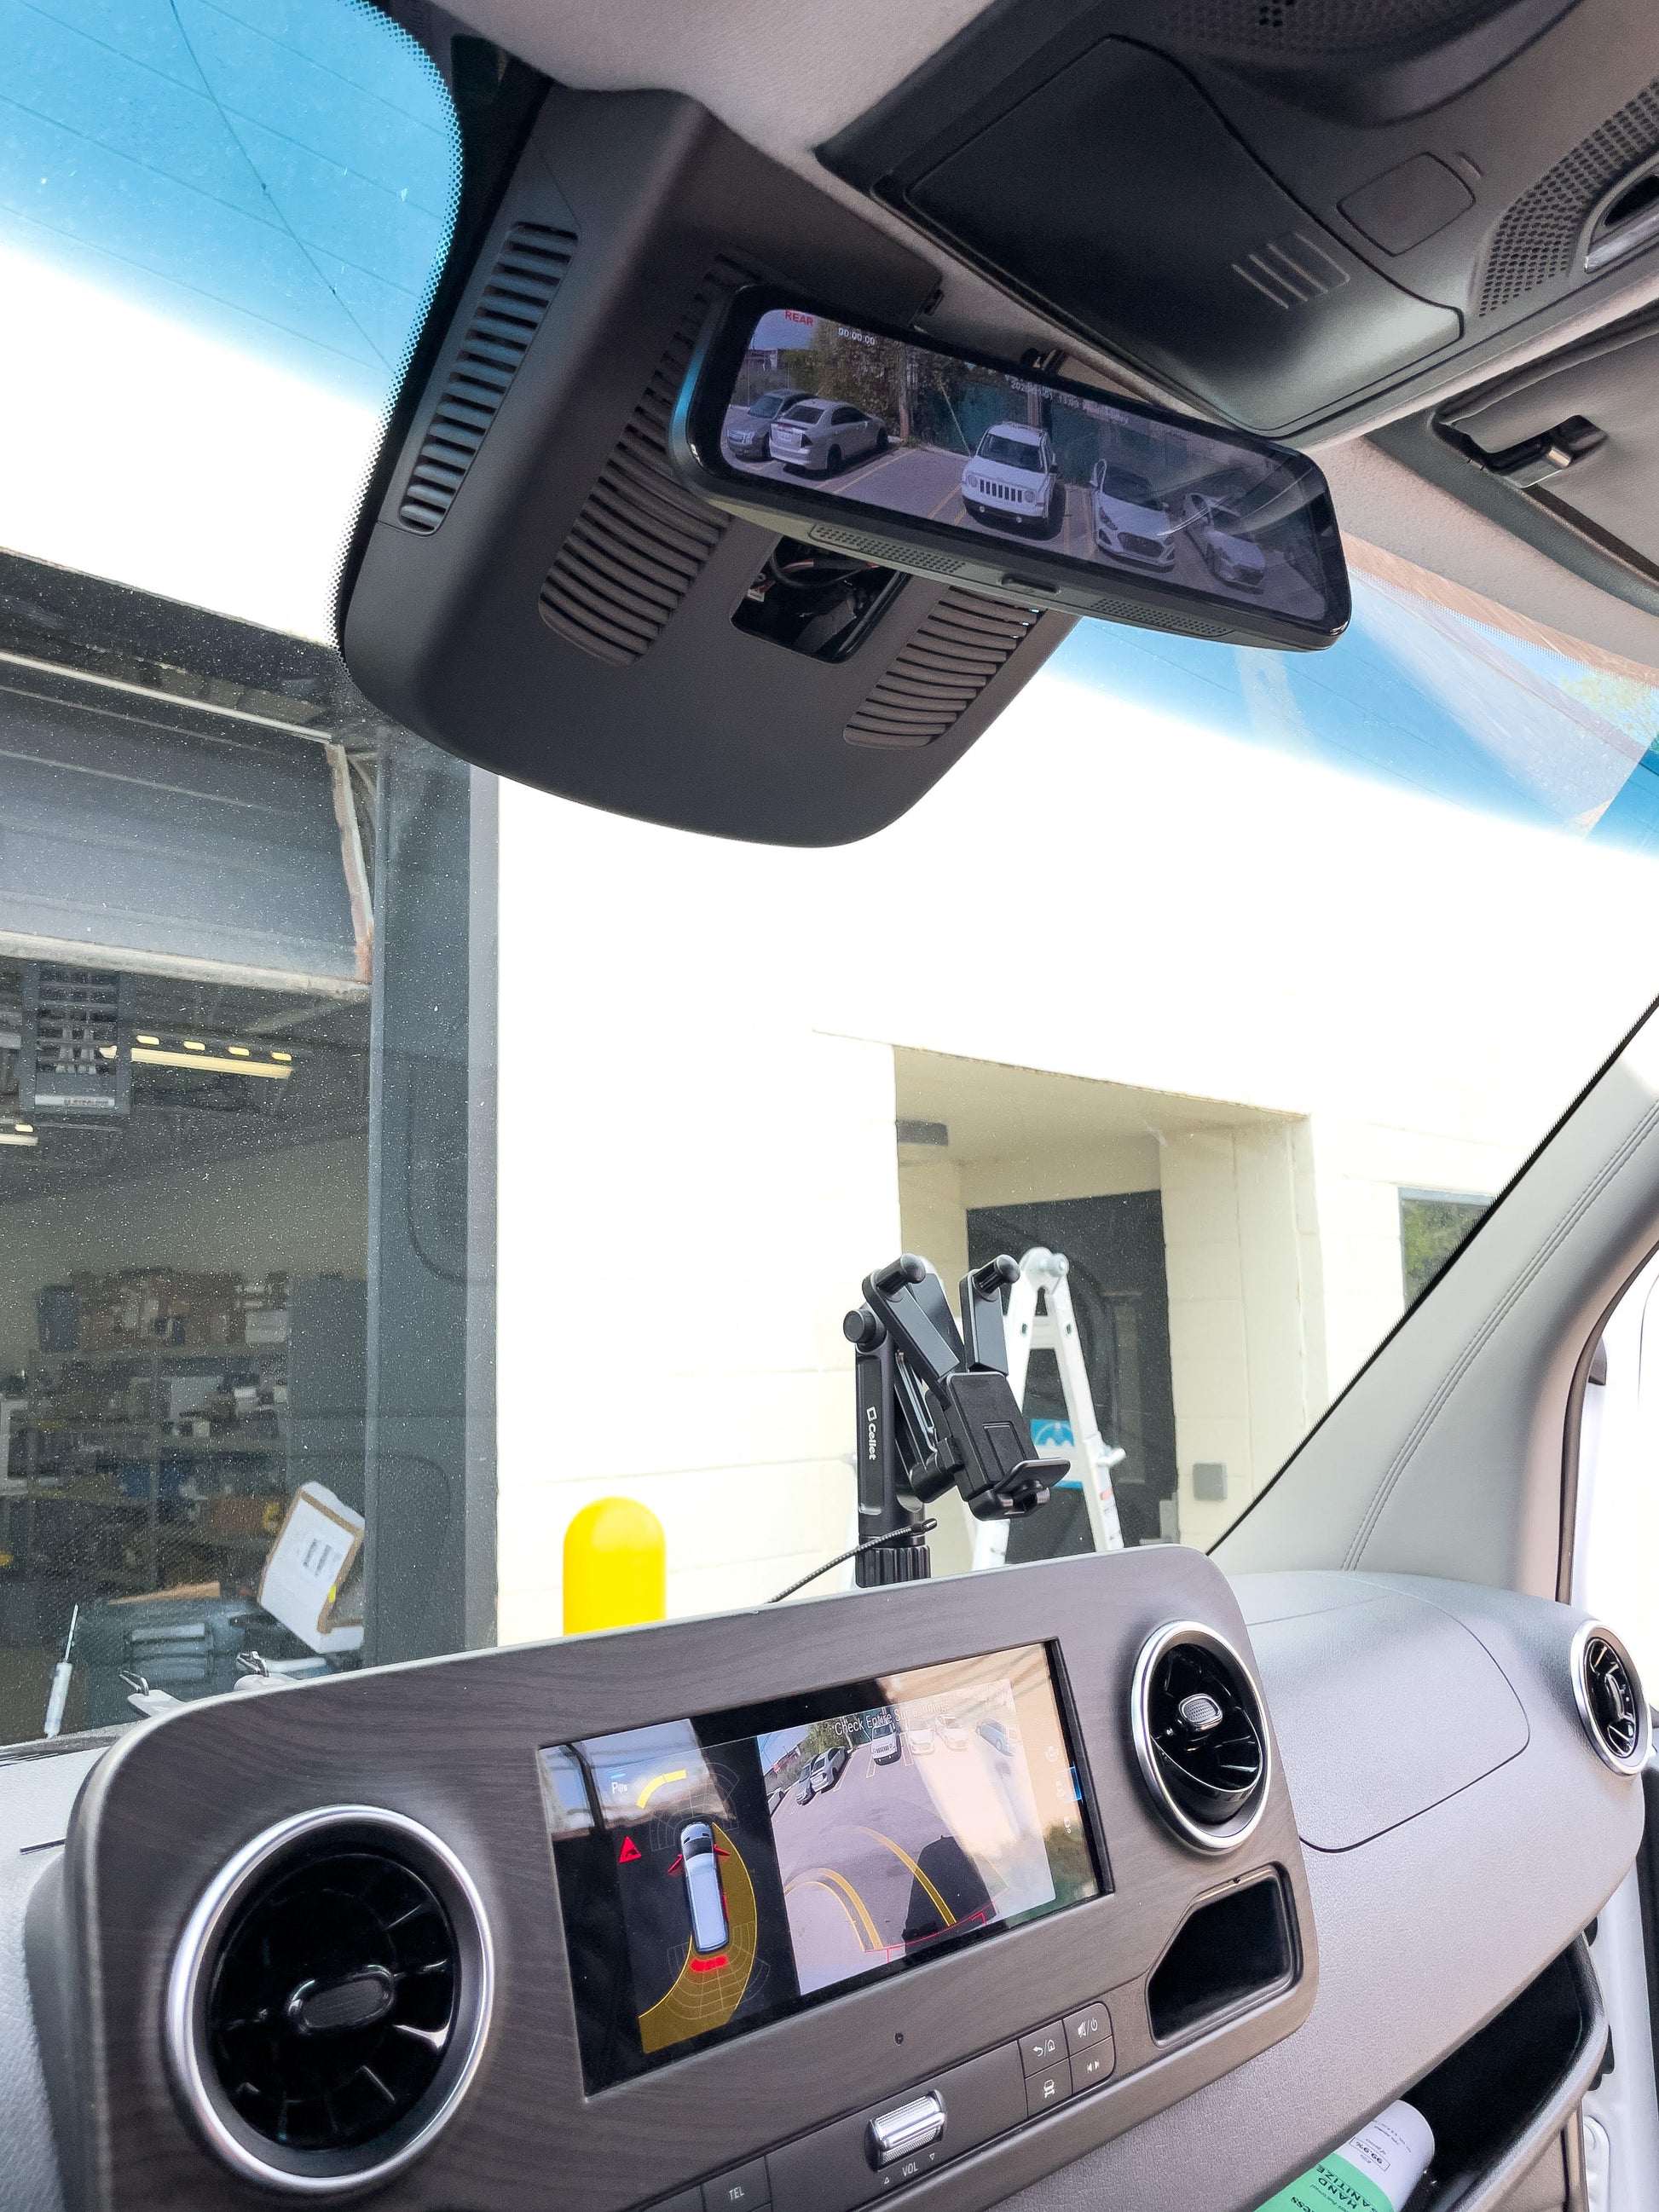 Fullview mirror installed in a Sprinter van